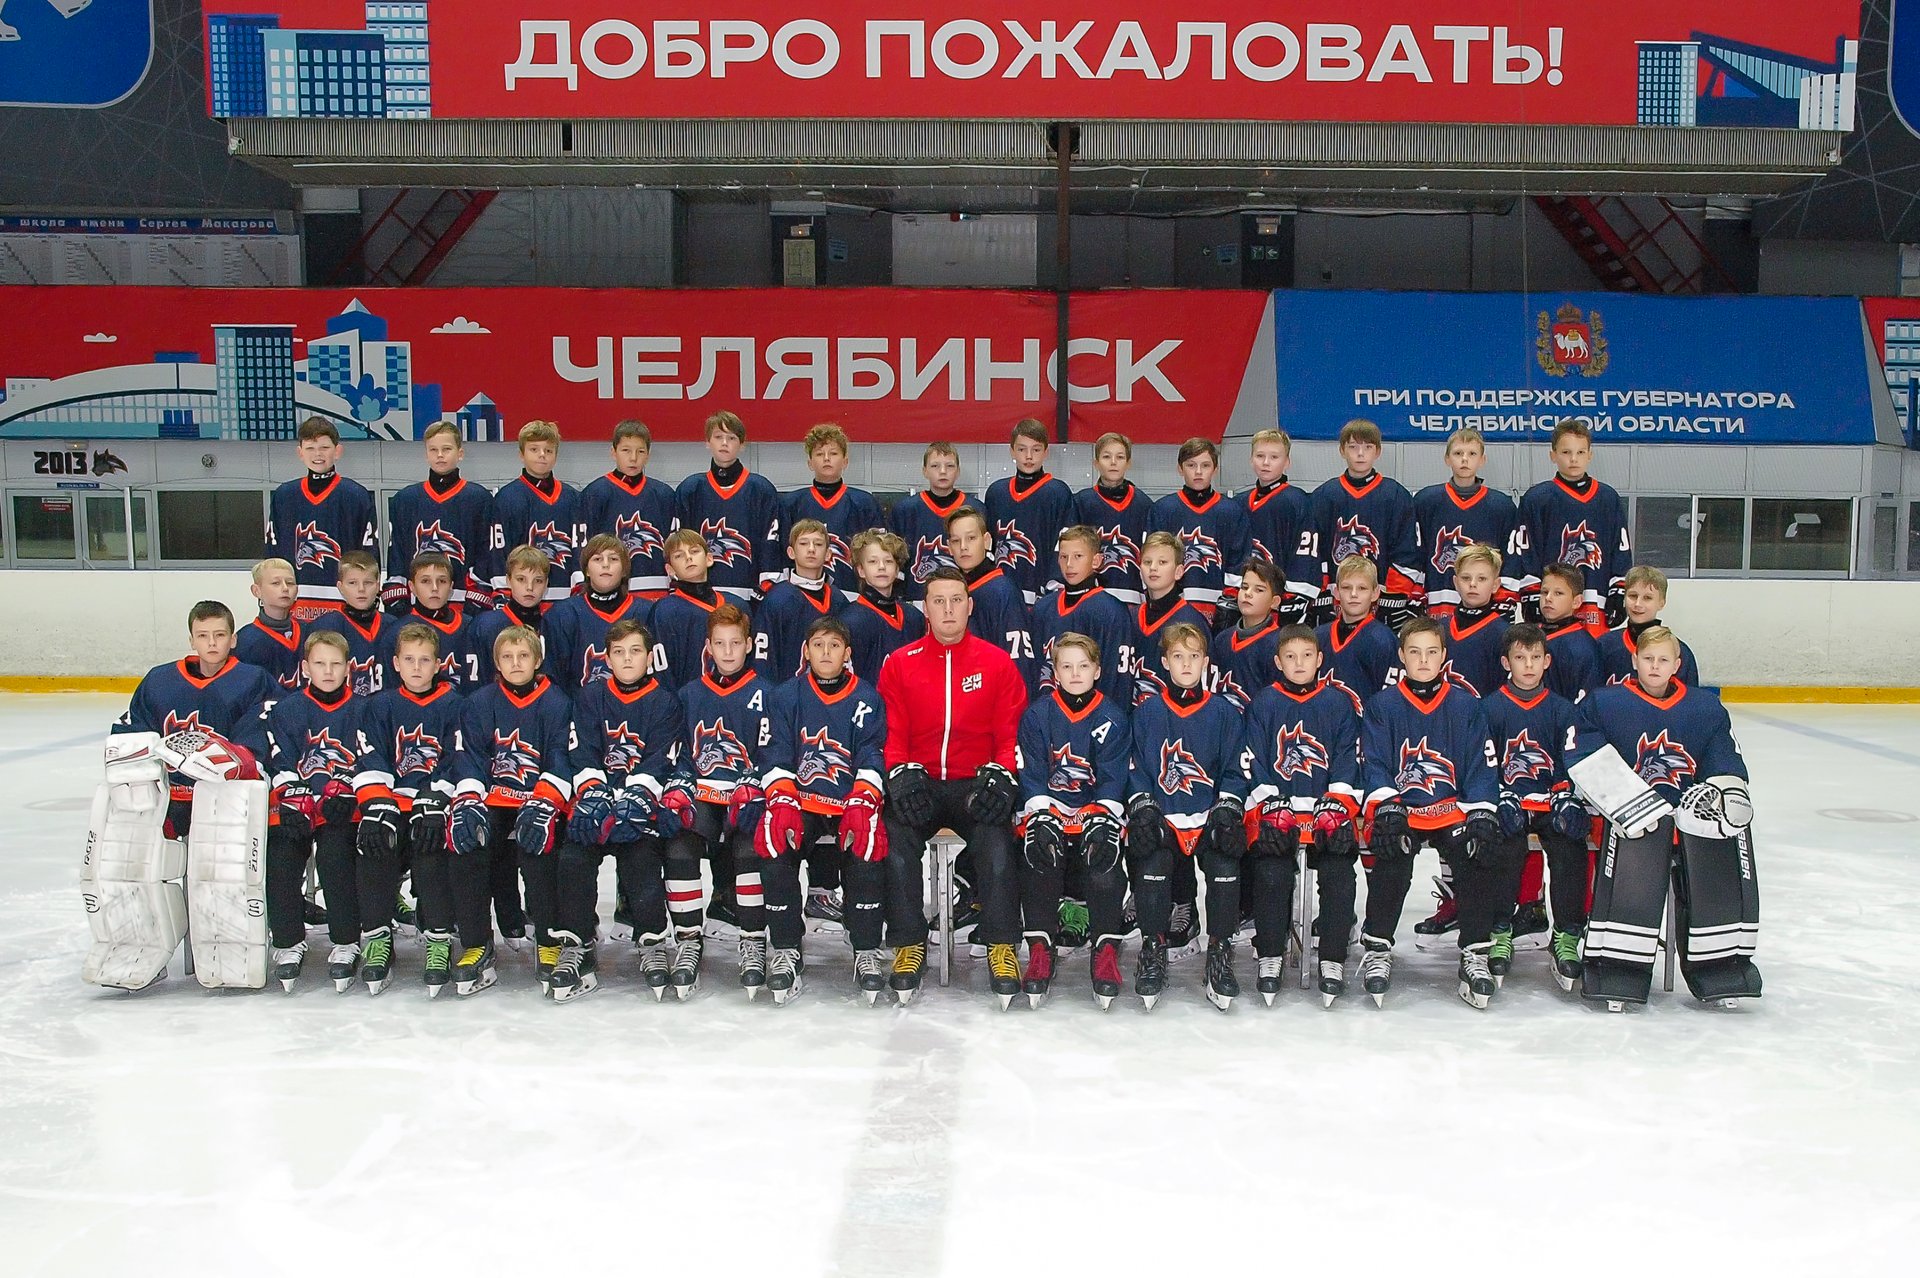 Челябинск 2011 год. Хоккейная команда молодцы картинка. Чемпионат мхл 2023 2024 результат